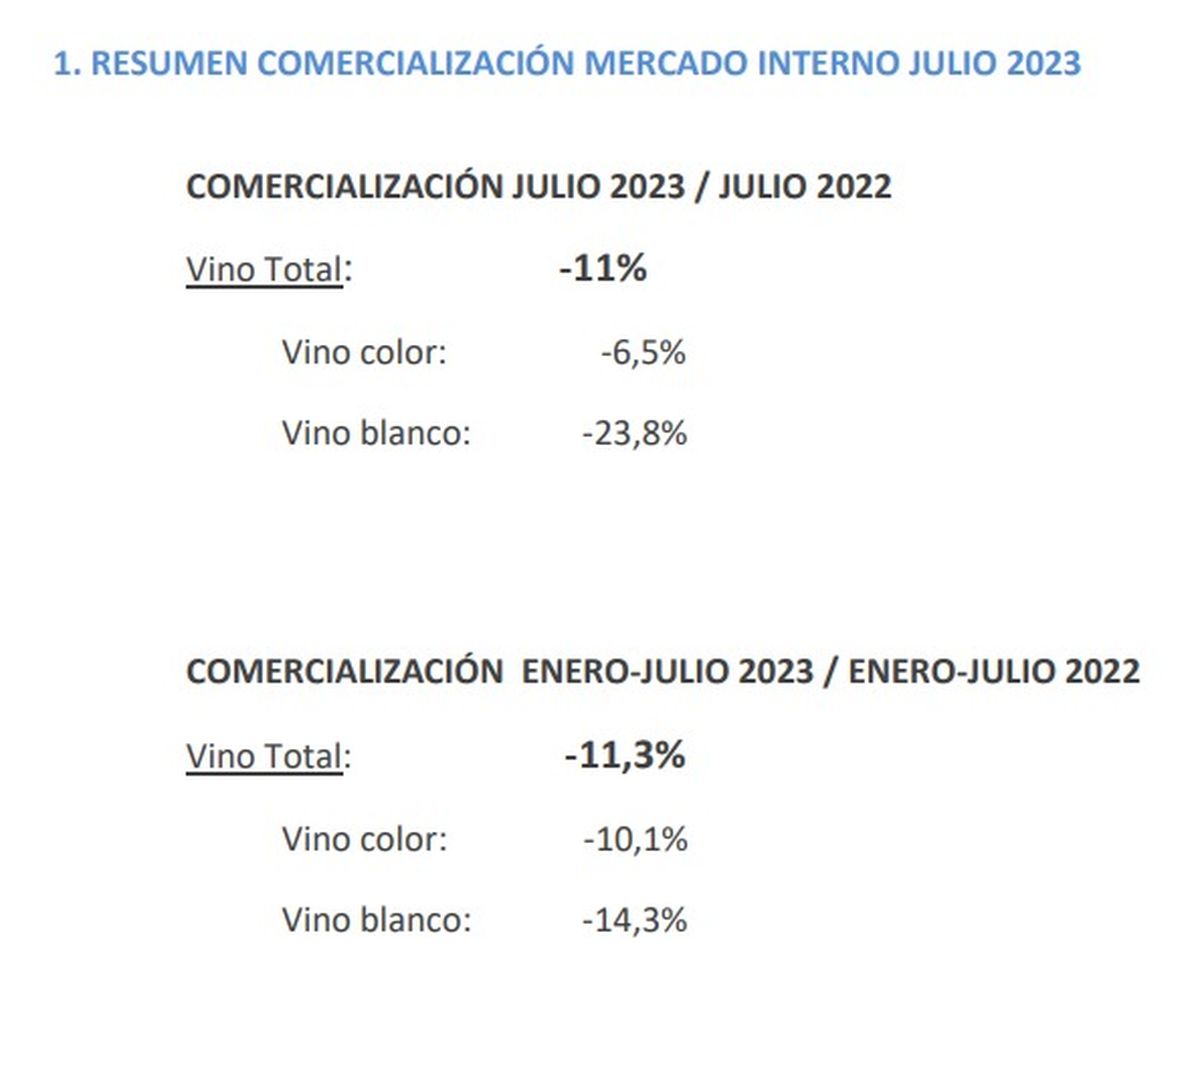 Como se ve, en un año el consumo de vino en el mercado interno bajó un 11%. Cifras del Observatorio Vitivinícola Argentino. 